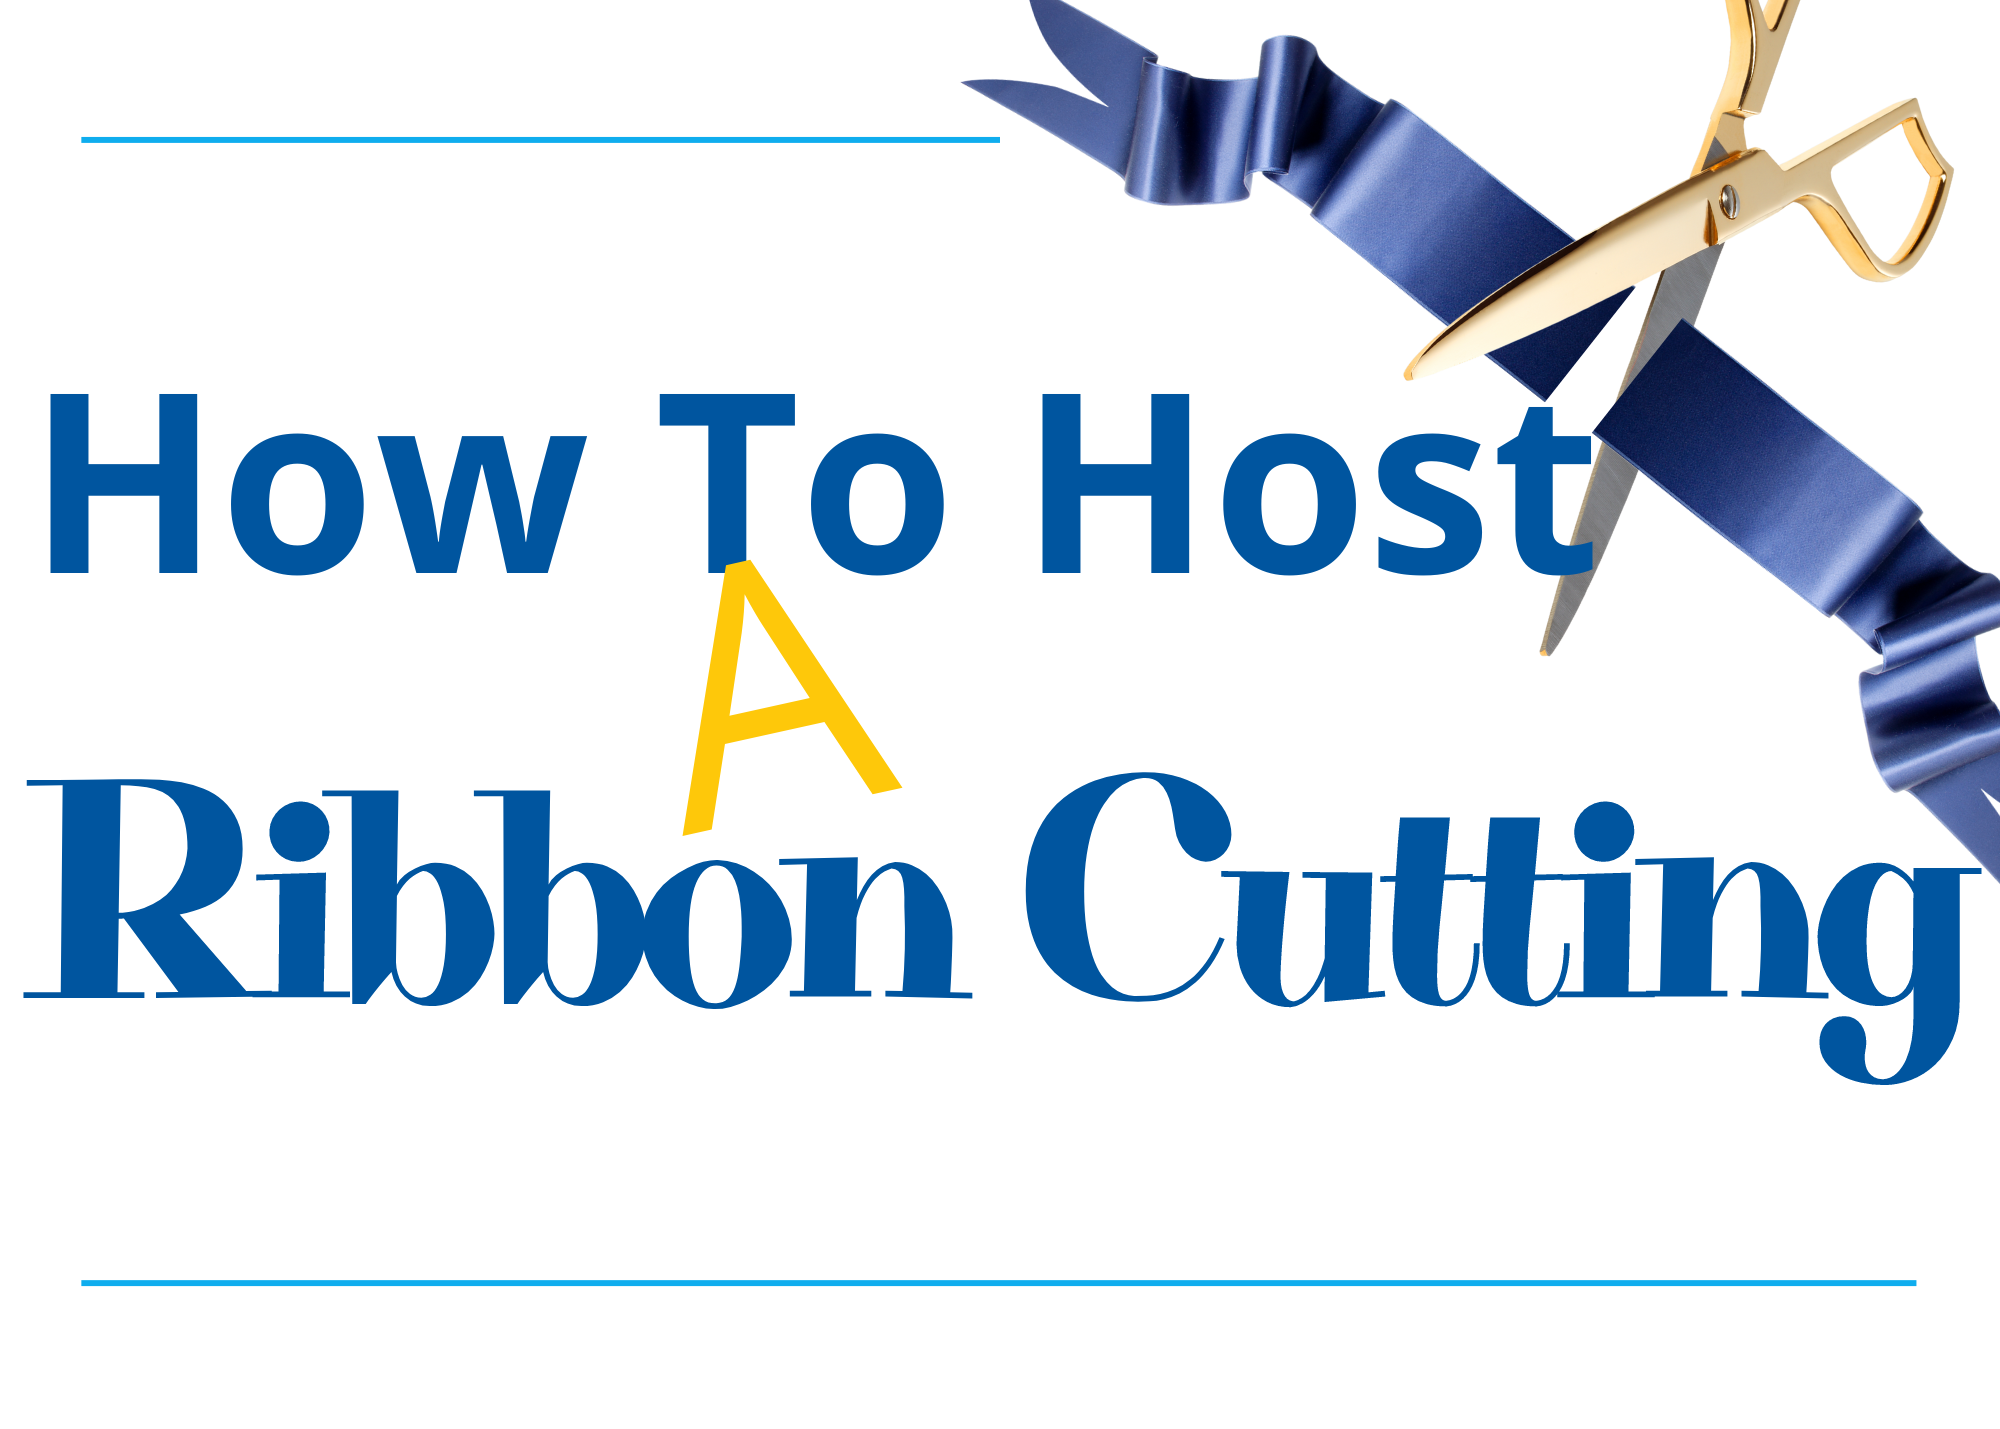 Ribbon Cuttings